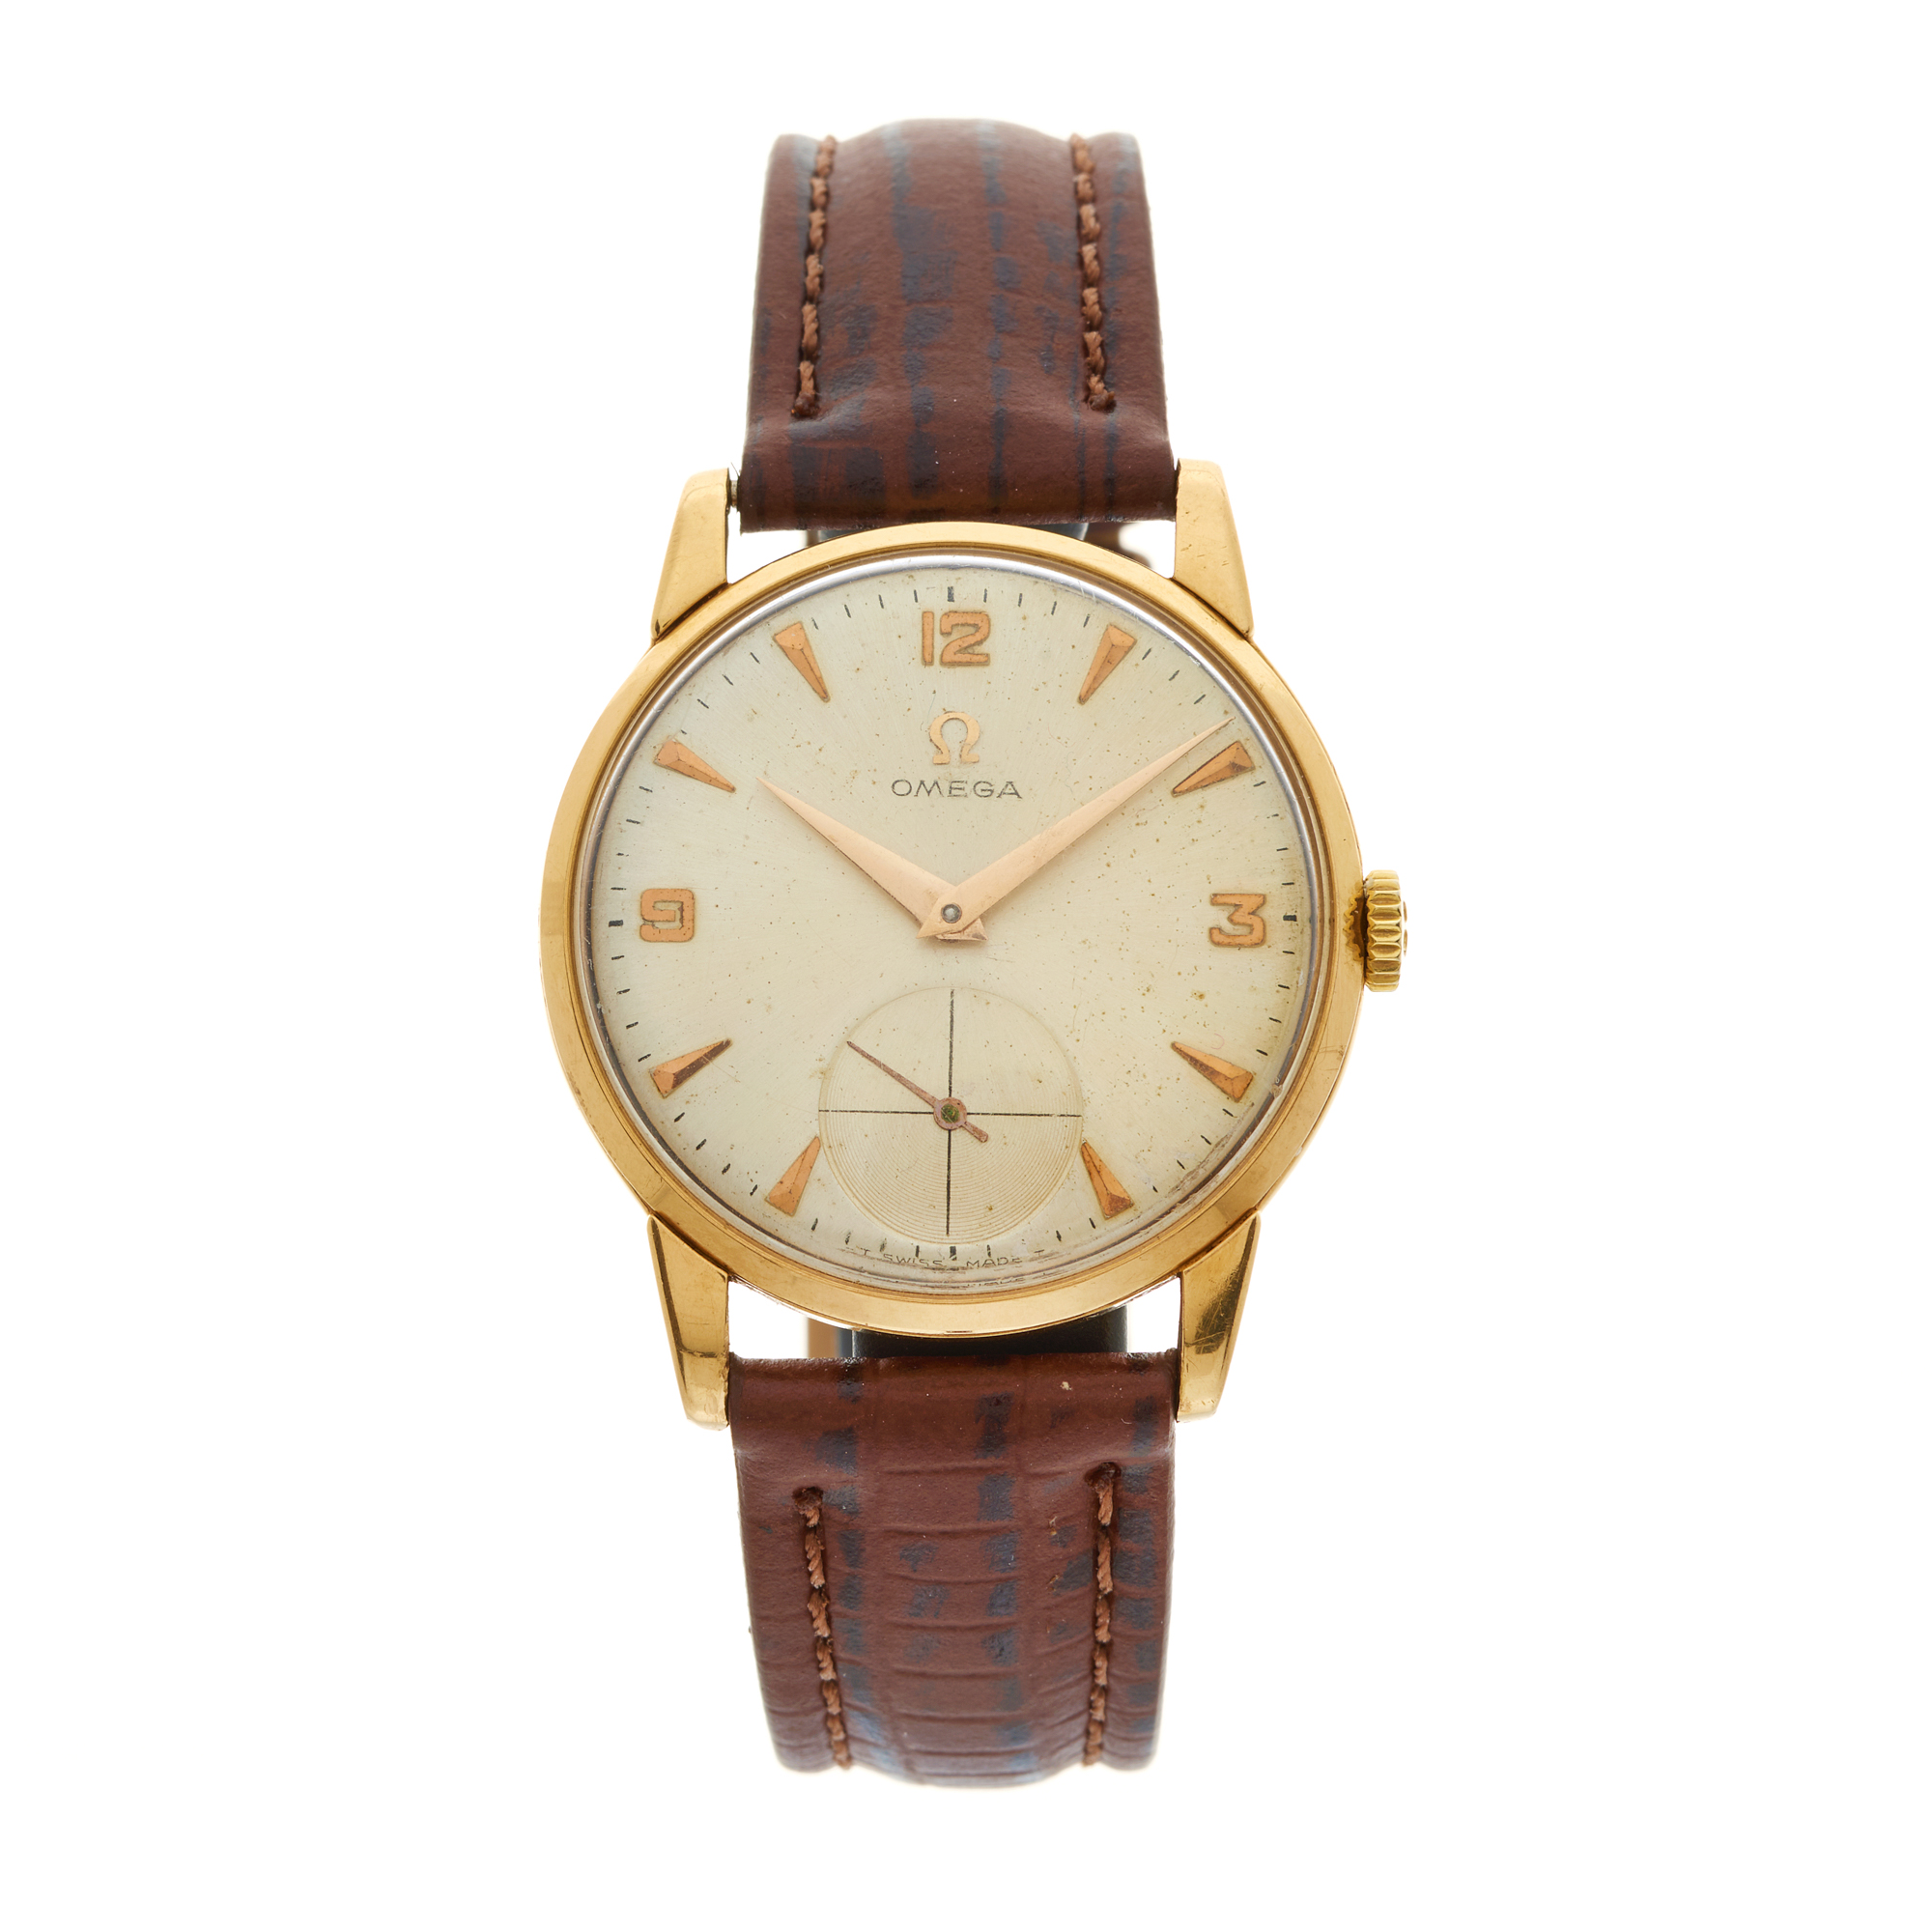 Omega, an 18ct gold wrist watch